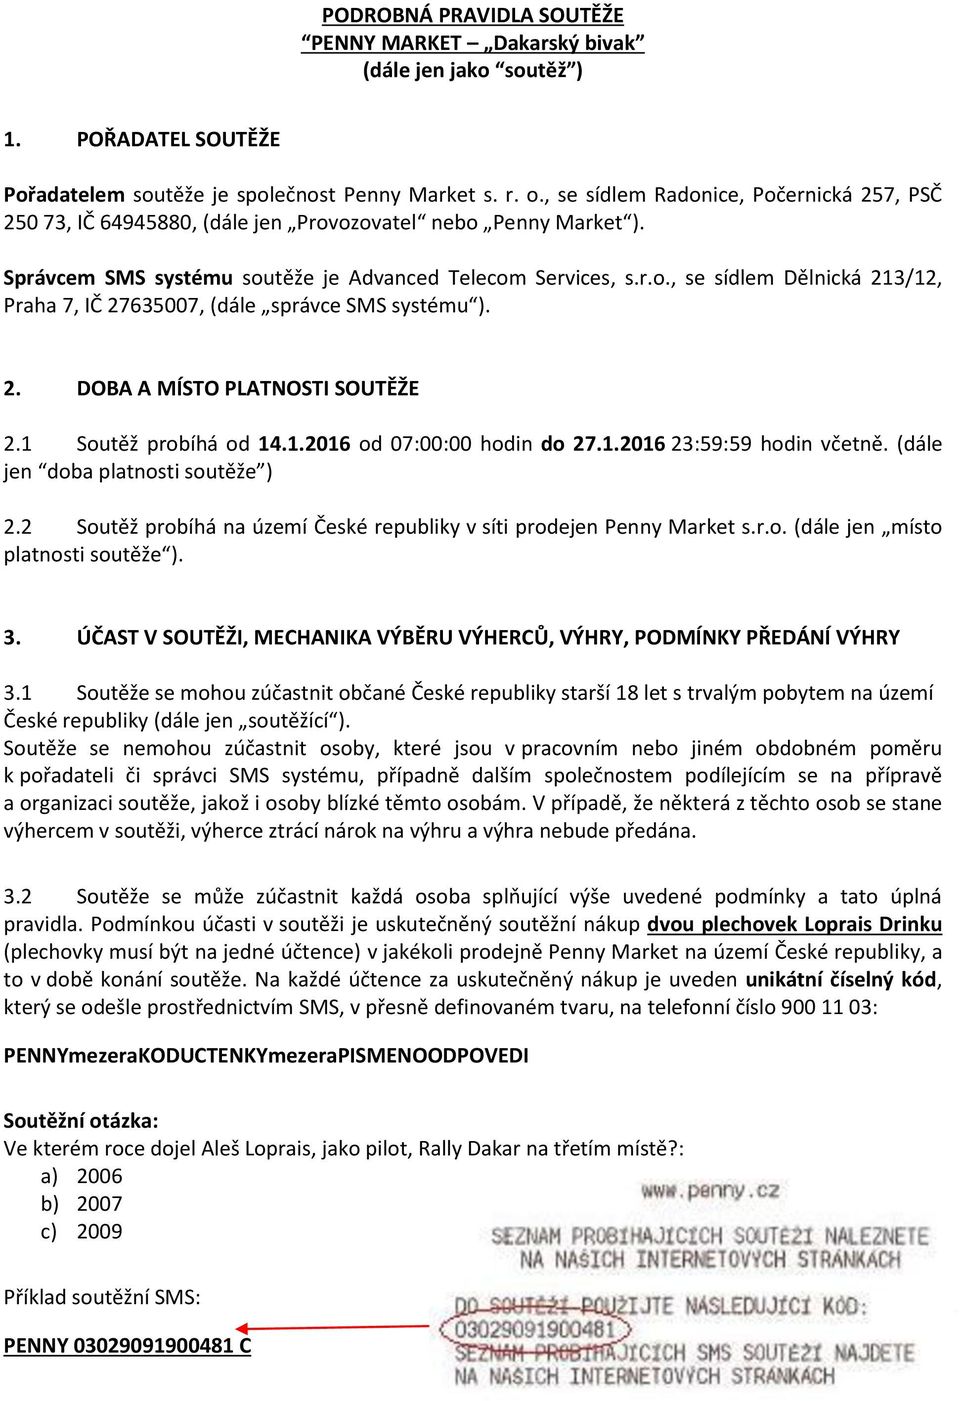 PODROBNÁ PRAVIDLA SOUTĚŽE PENNY MARKET Dakarský bivak (dále jen jako soutěž  ) - PDF Stažení zdarma